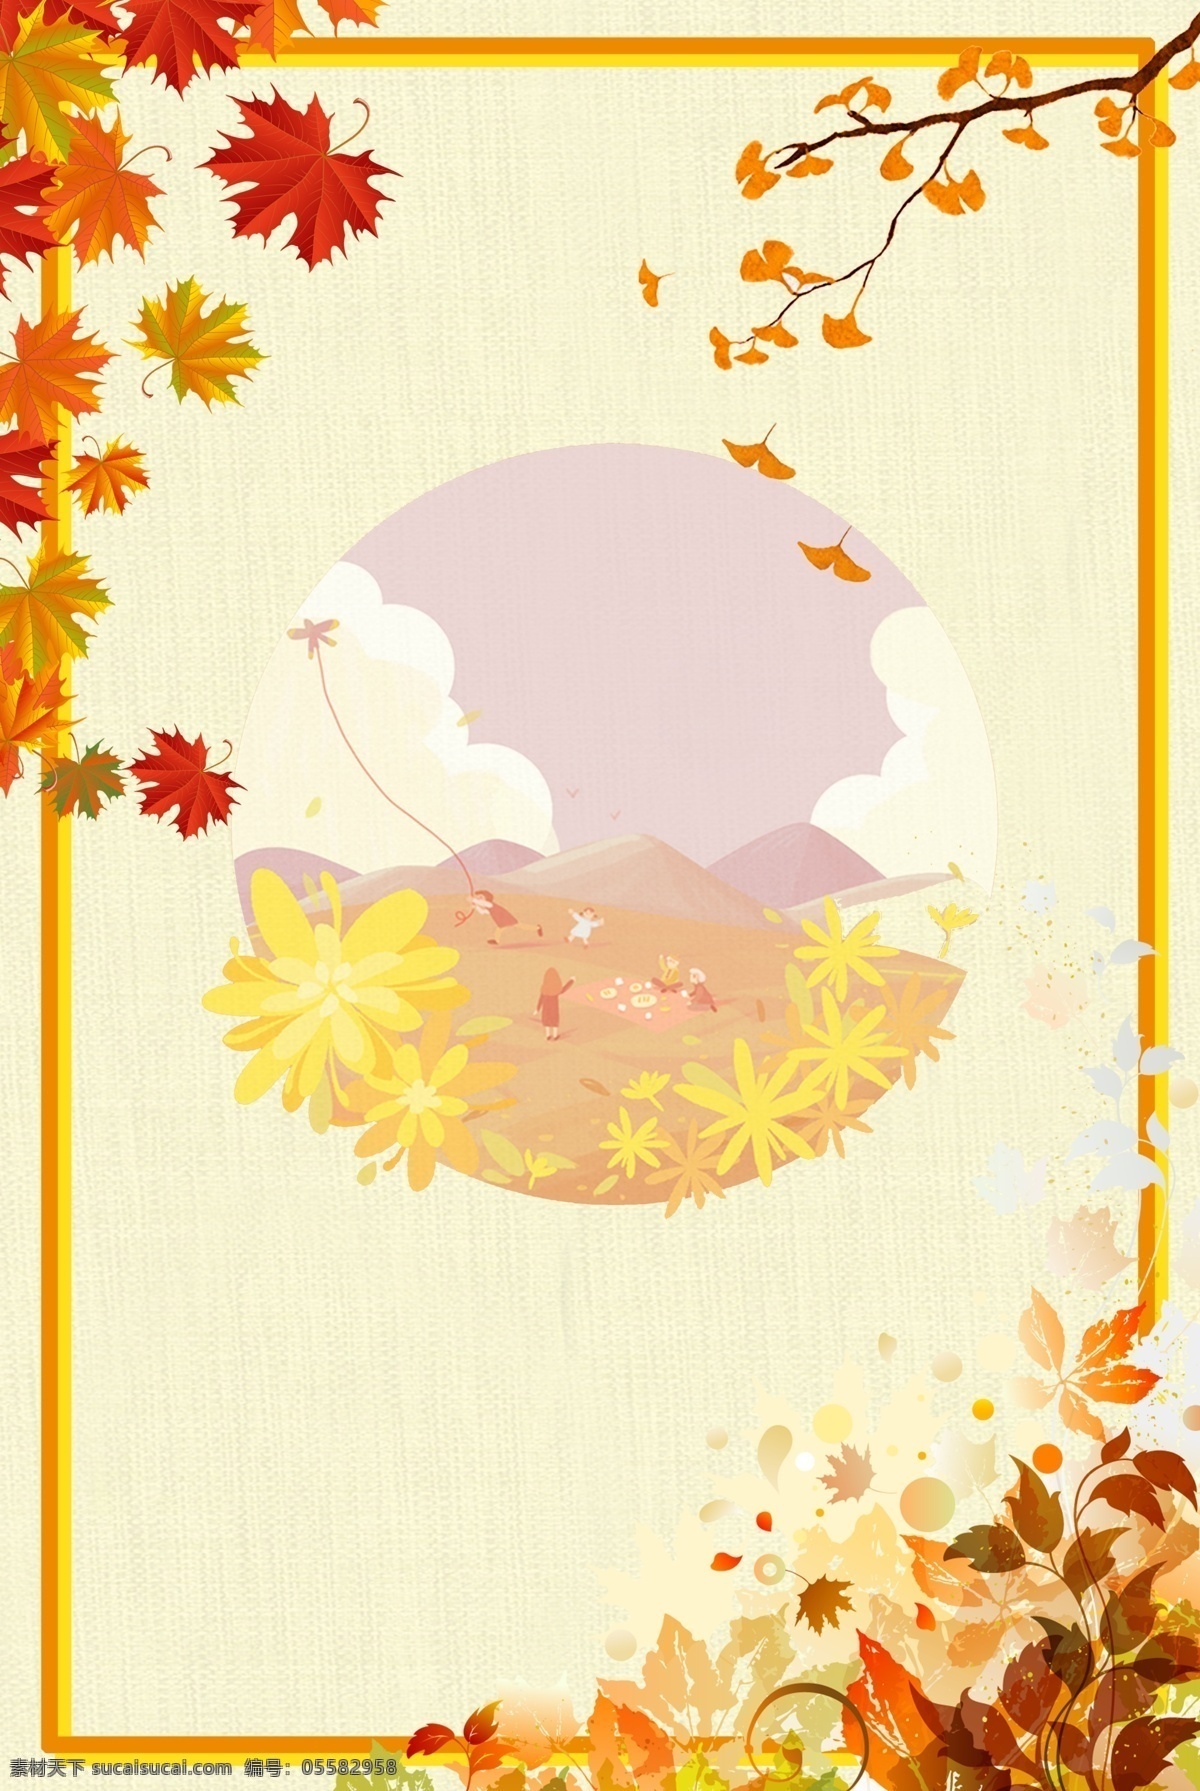 橙色 秋季 枫叶 植物 背景 季节 换季 装饰 边框 叶子 插画